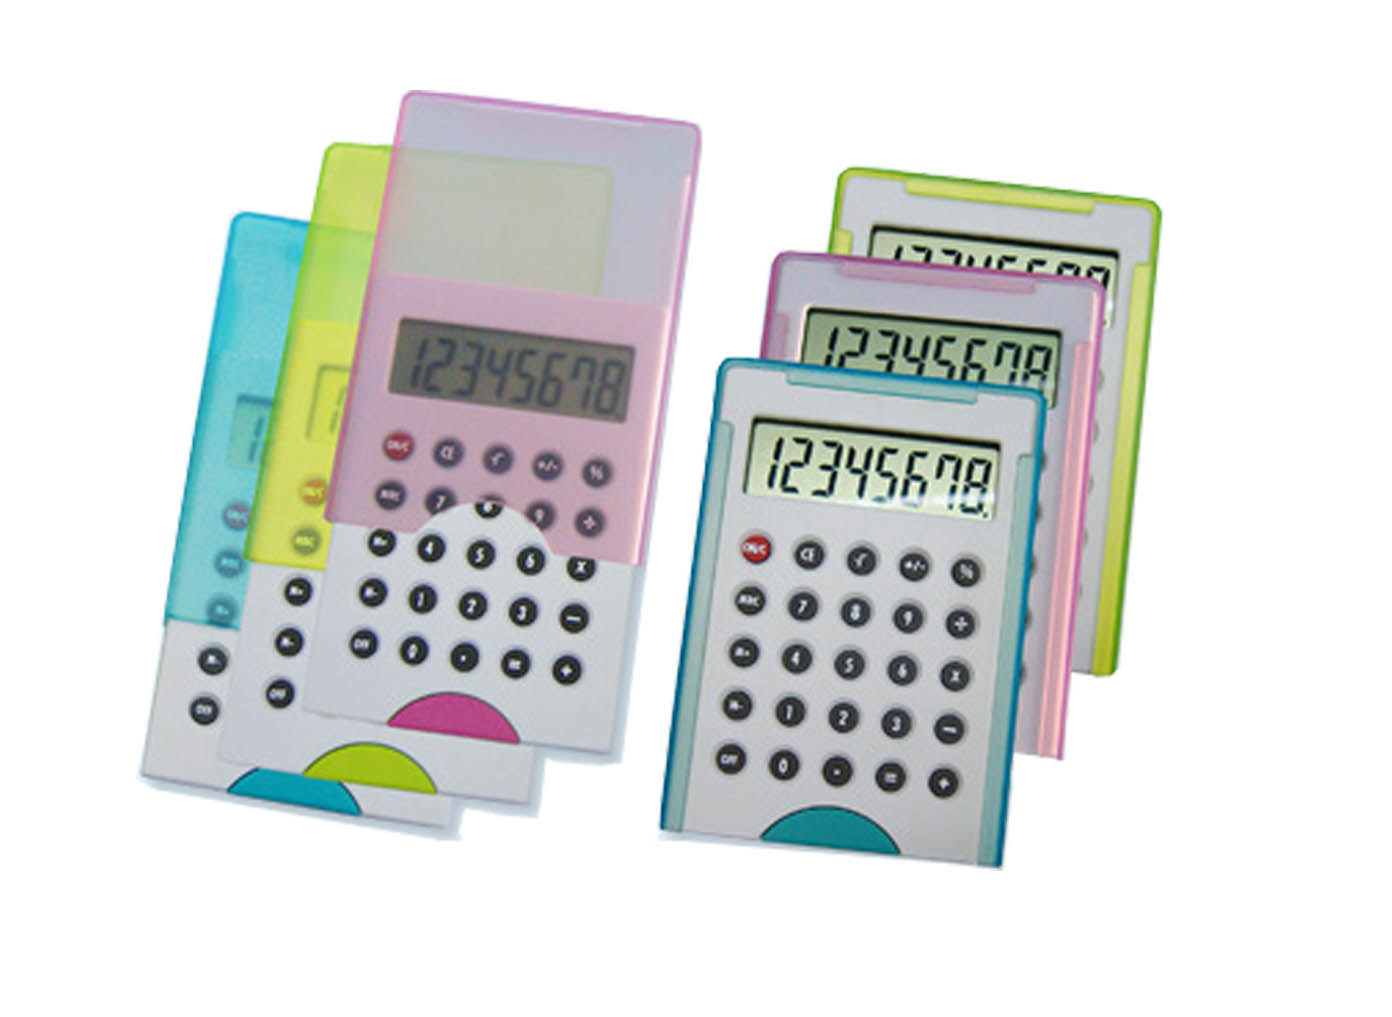 Slide Cover Promotion Gift Digital Calculator (IP-195)